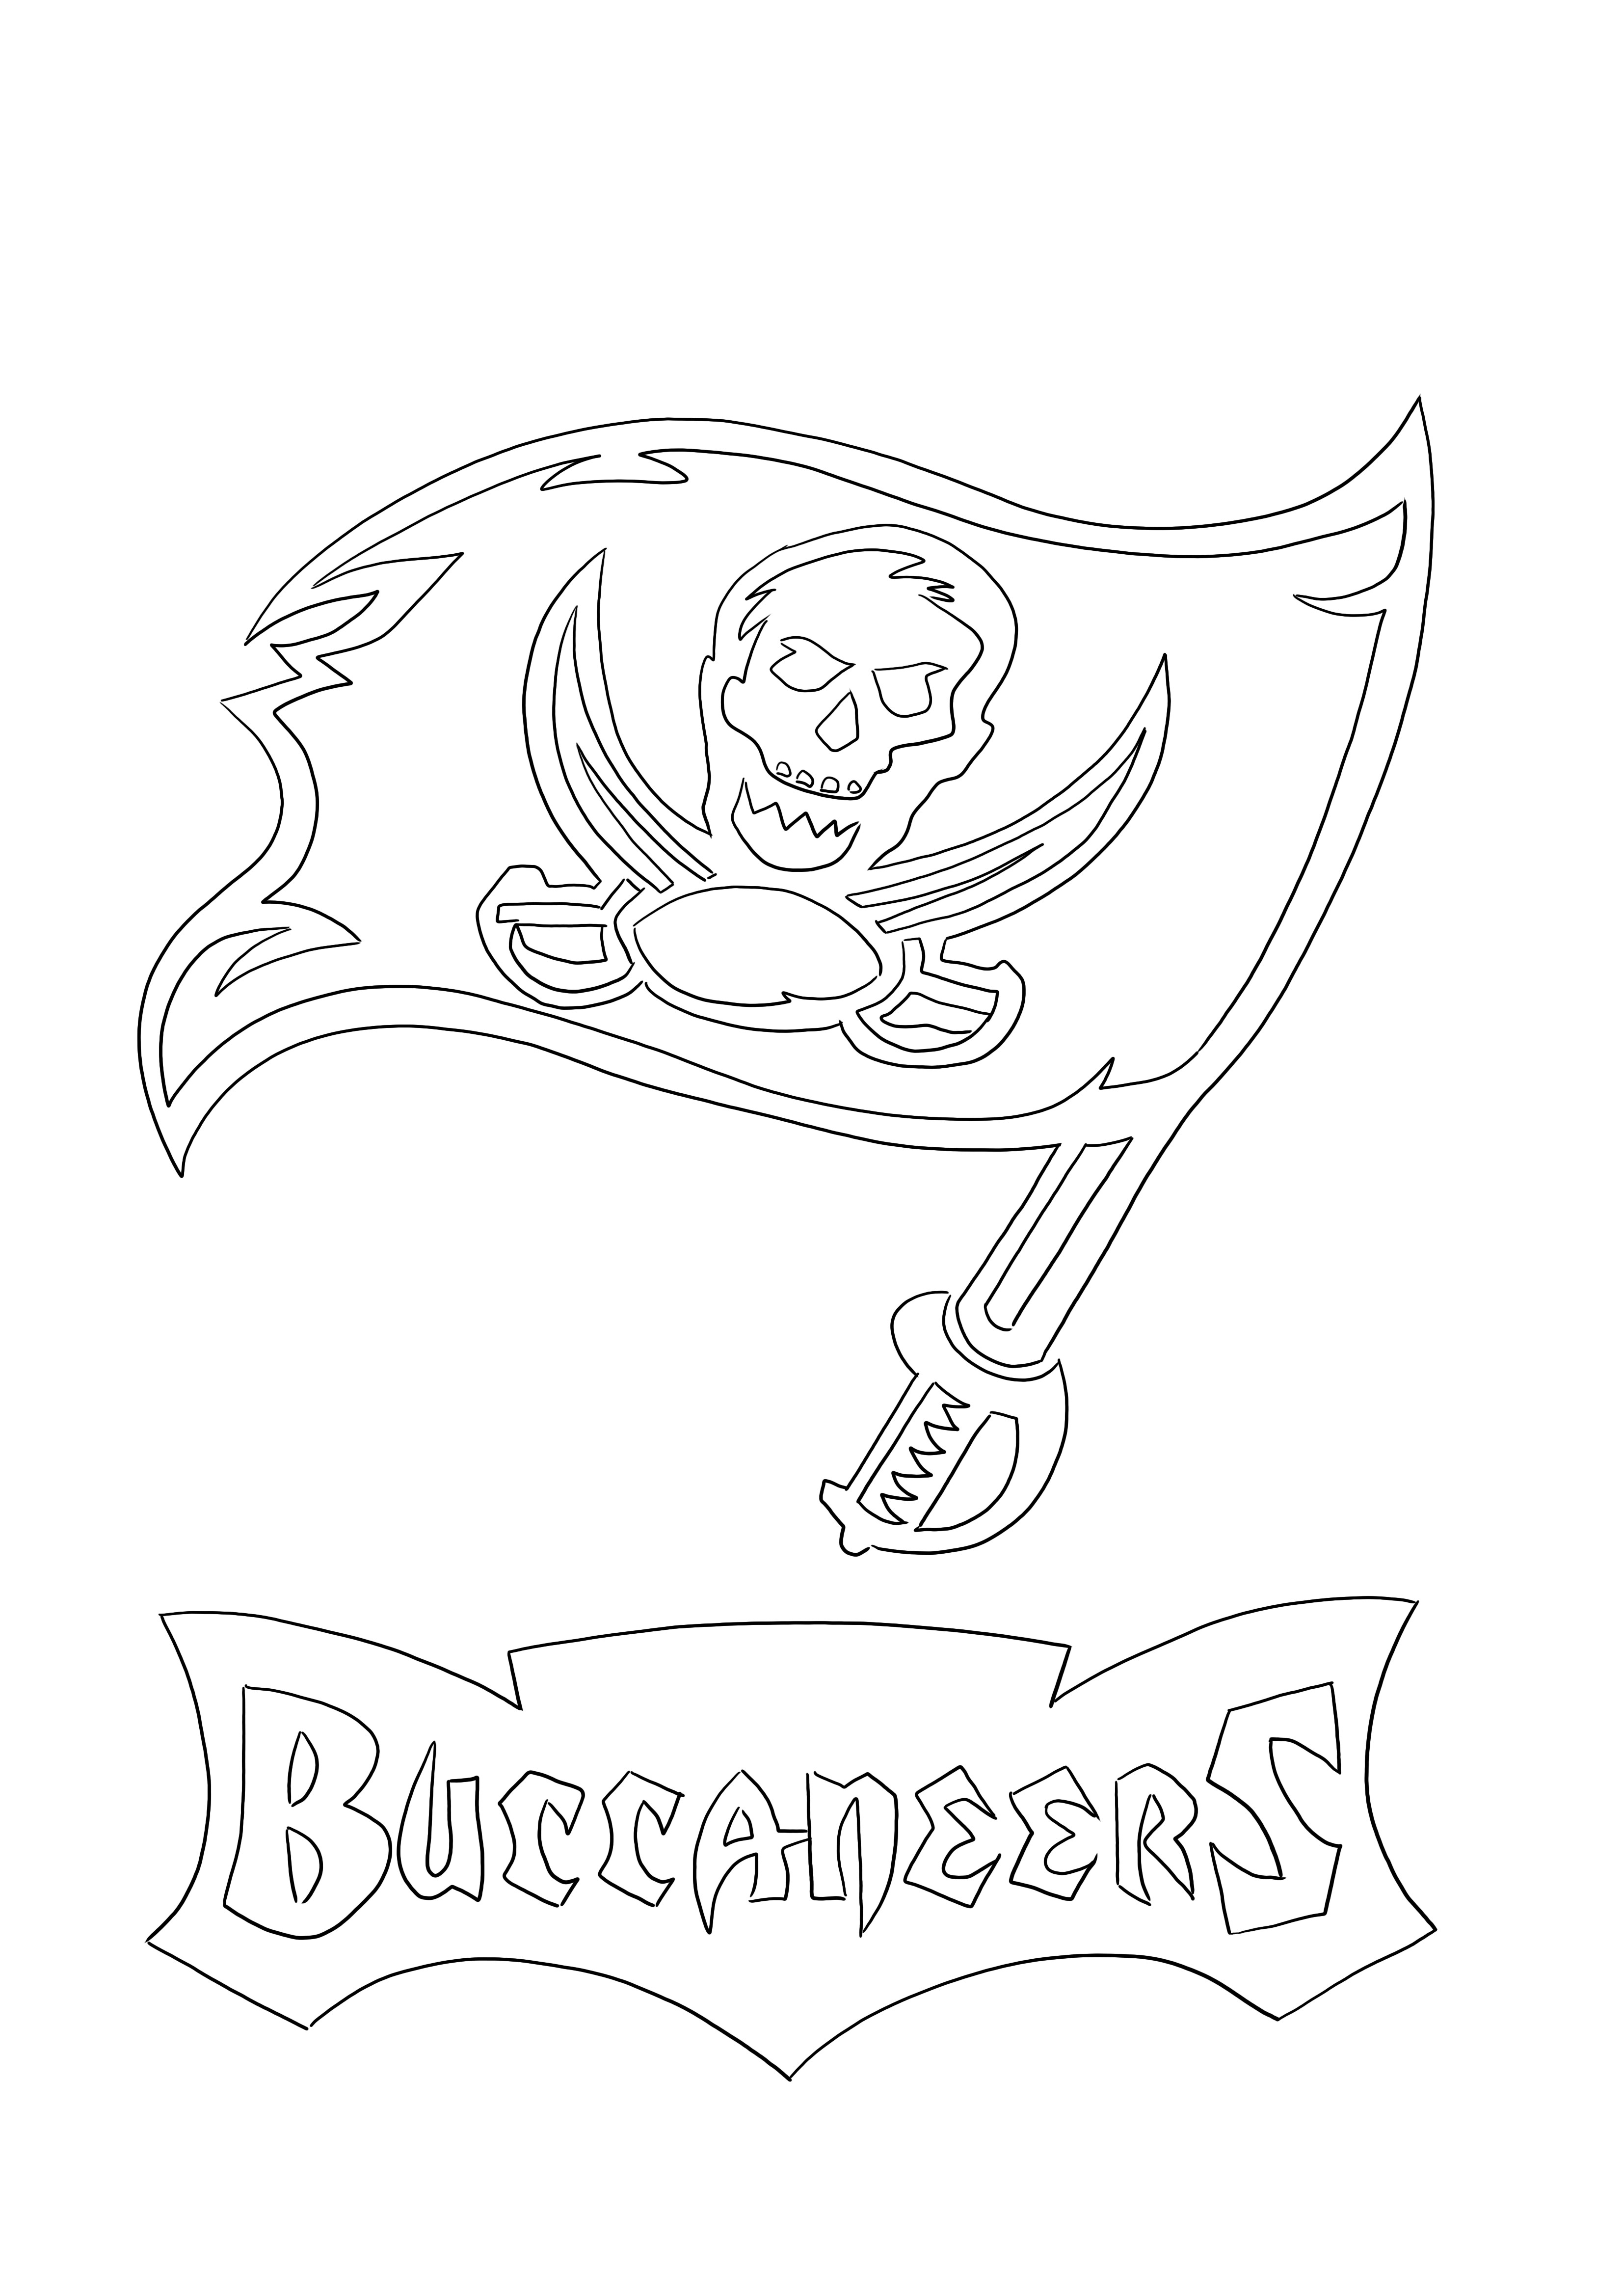 Logo Tampa Bay Buccaneers Immagine da colorare gratis da stampare o scaricare per i bambini